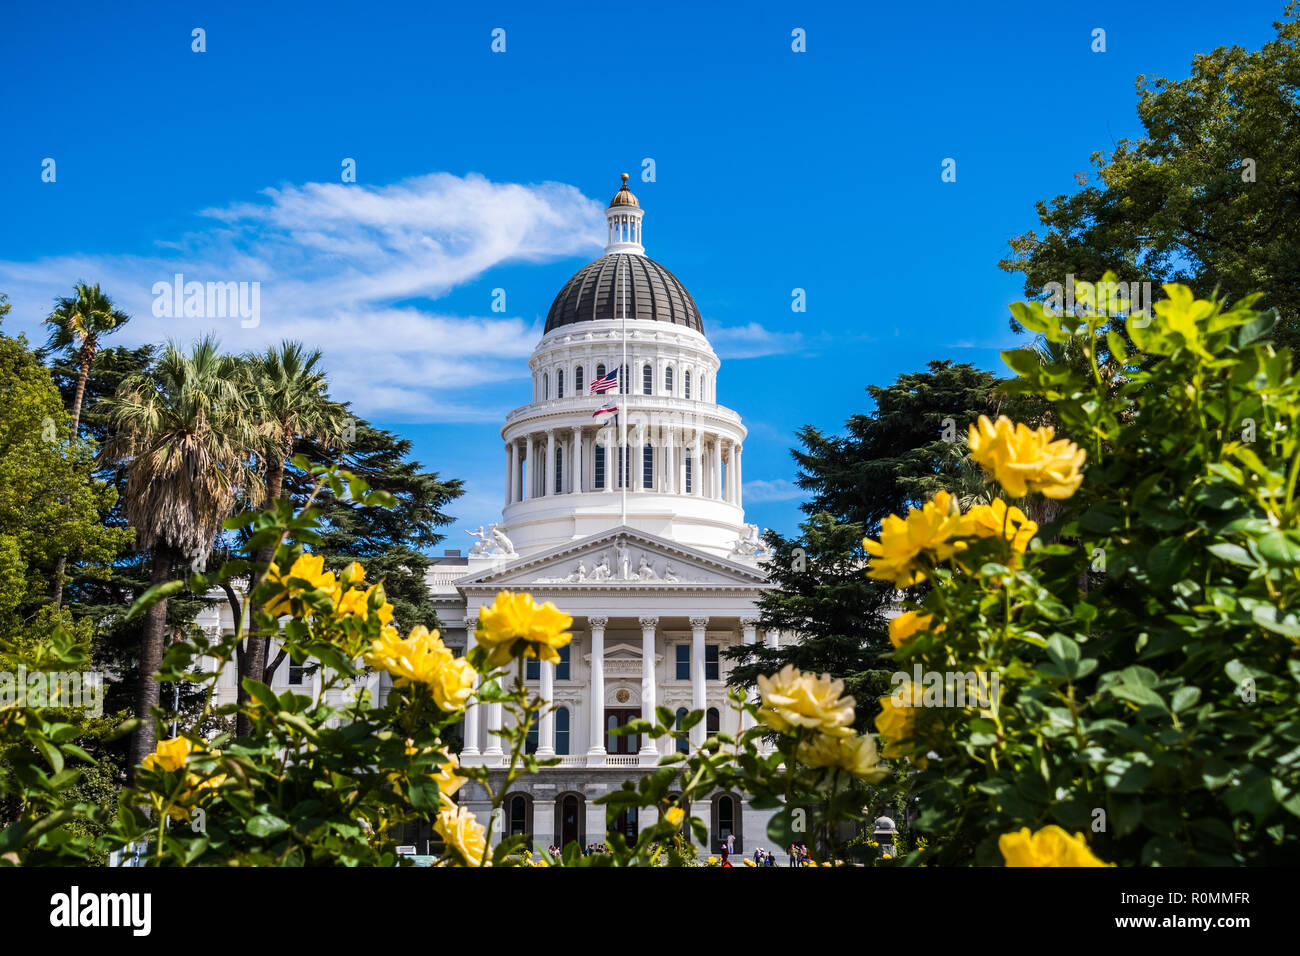 California State Capitol building, Sacramento, Californie ; journée ensoleillée ; de belles roses jaunes à l'avant-plan Banque D'Images